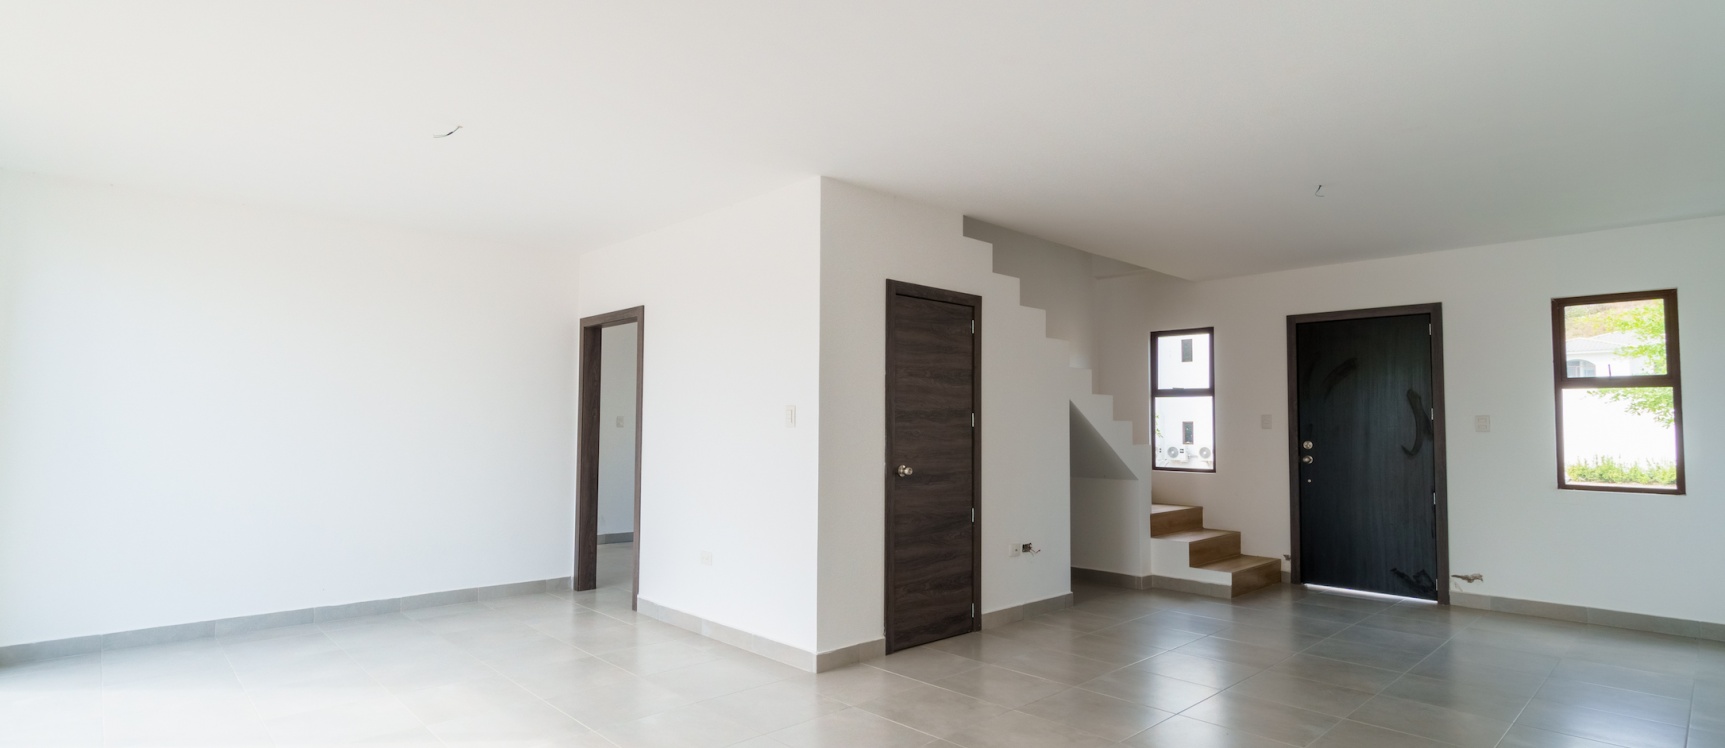 GeoBienes - Casa de 3 habitaciones en venta ubicada en la Urbanización Villas del Bosque - Plusvalia Guayaquil Casas de venta y alquiler Inmobiliaria Ecuador